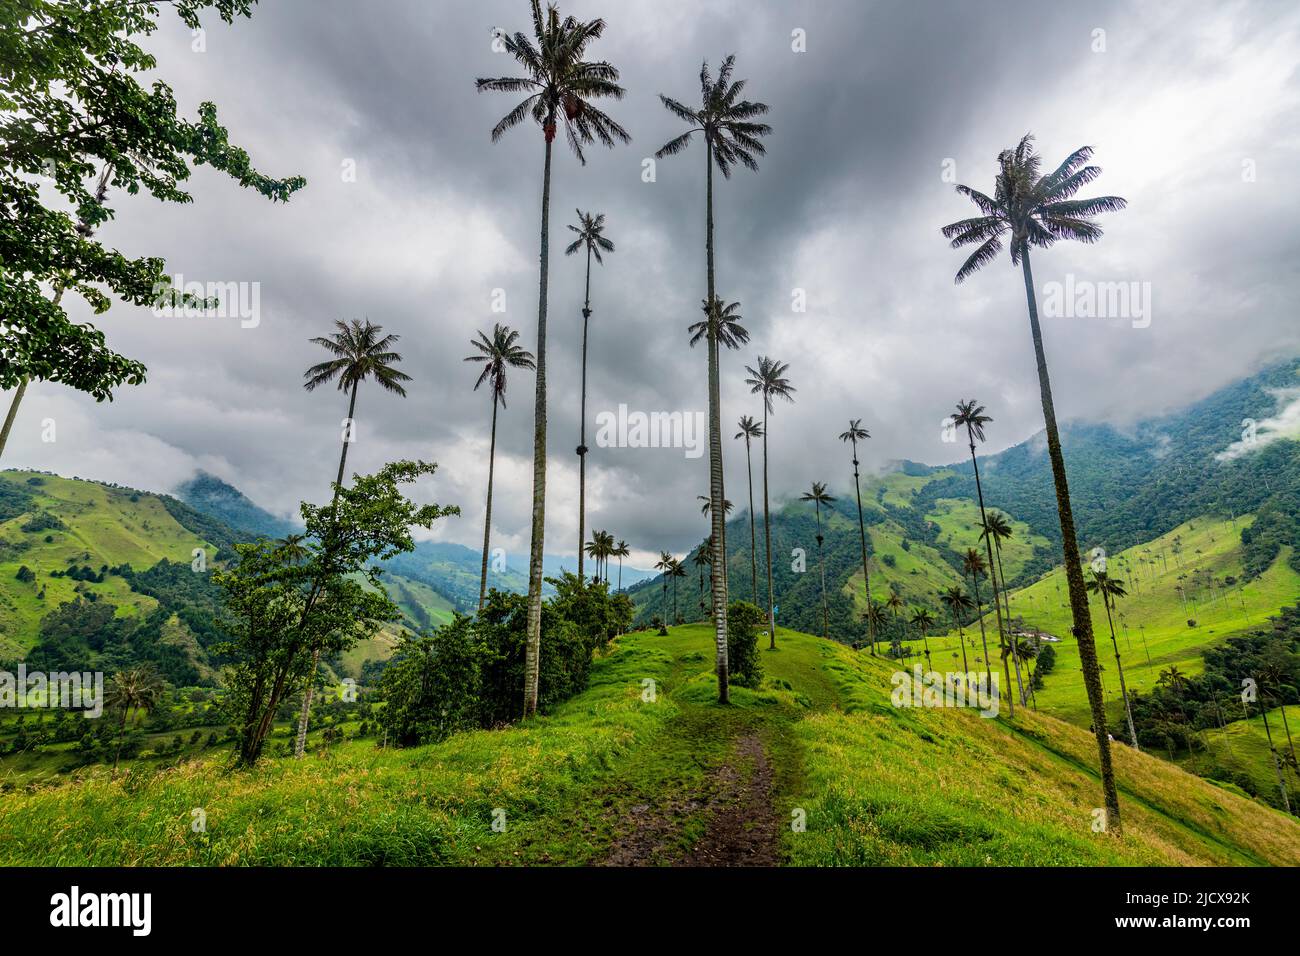 Palmiers à cire, les plus grands palmiers du monde, vallée de Cocora, site classé au patrimoine mondial de l'UNESCO, Paysage culturel du café, Salento, Colombie, Amérique du Sud Banque D'Images